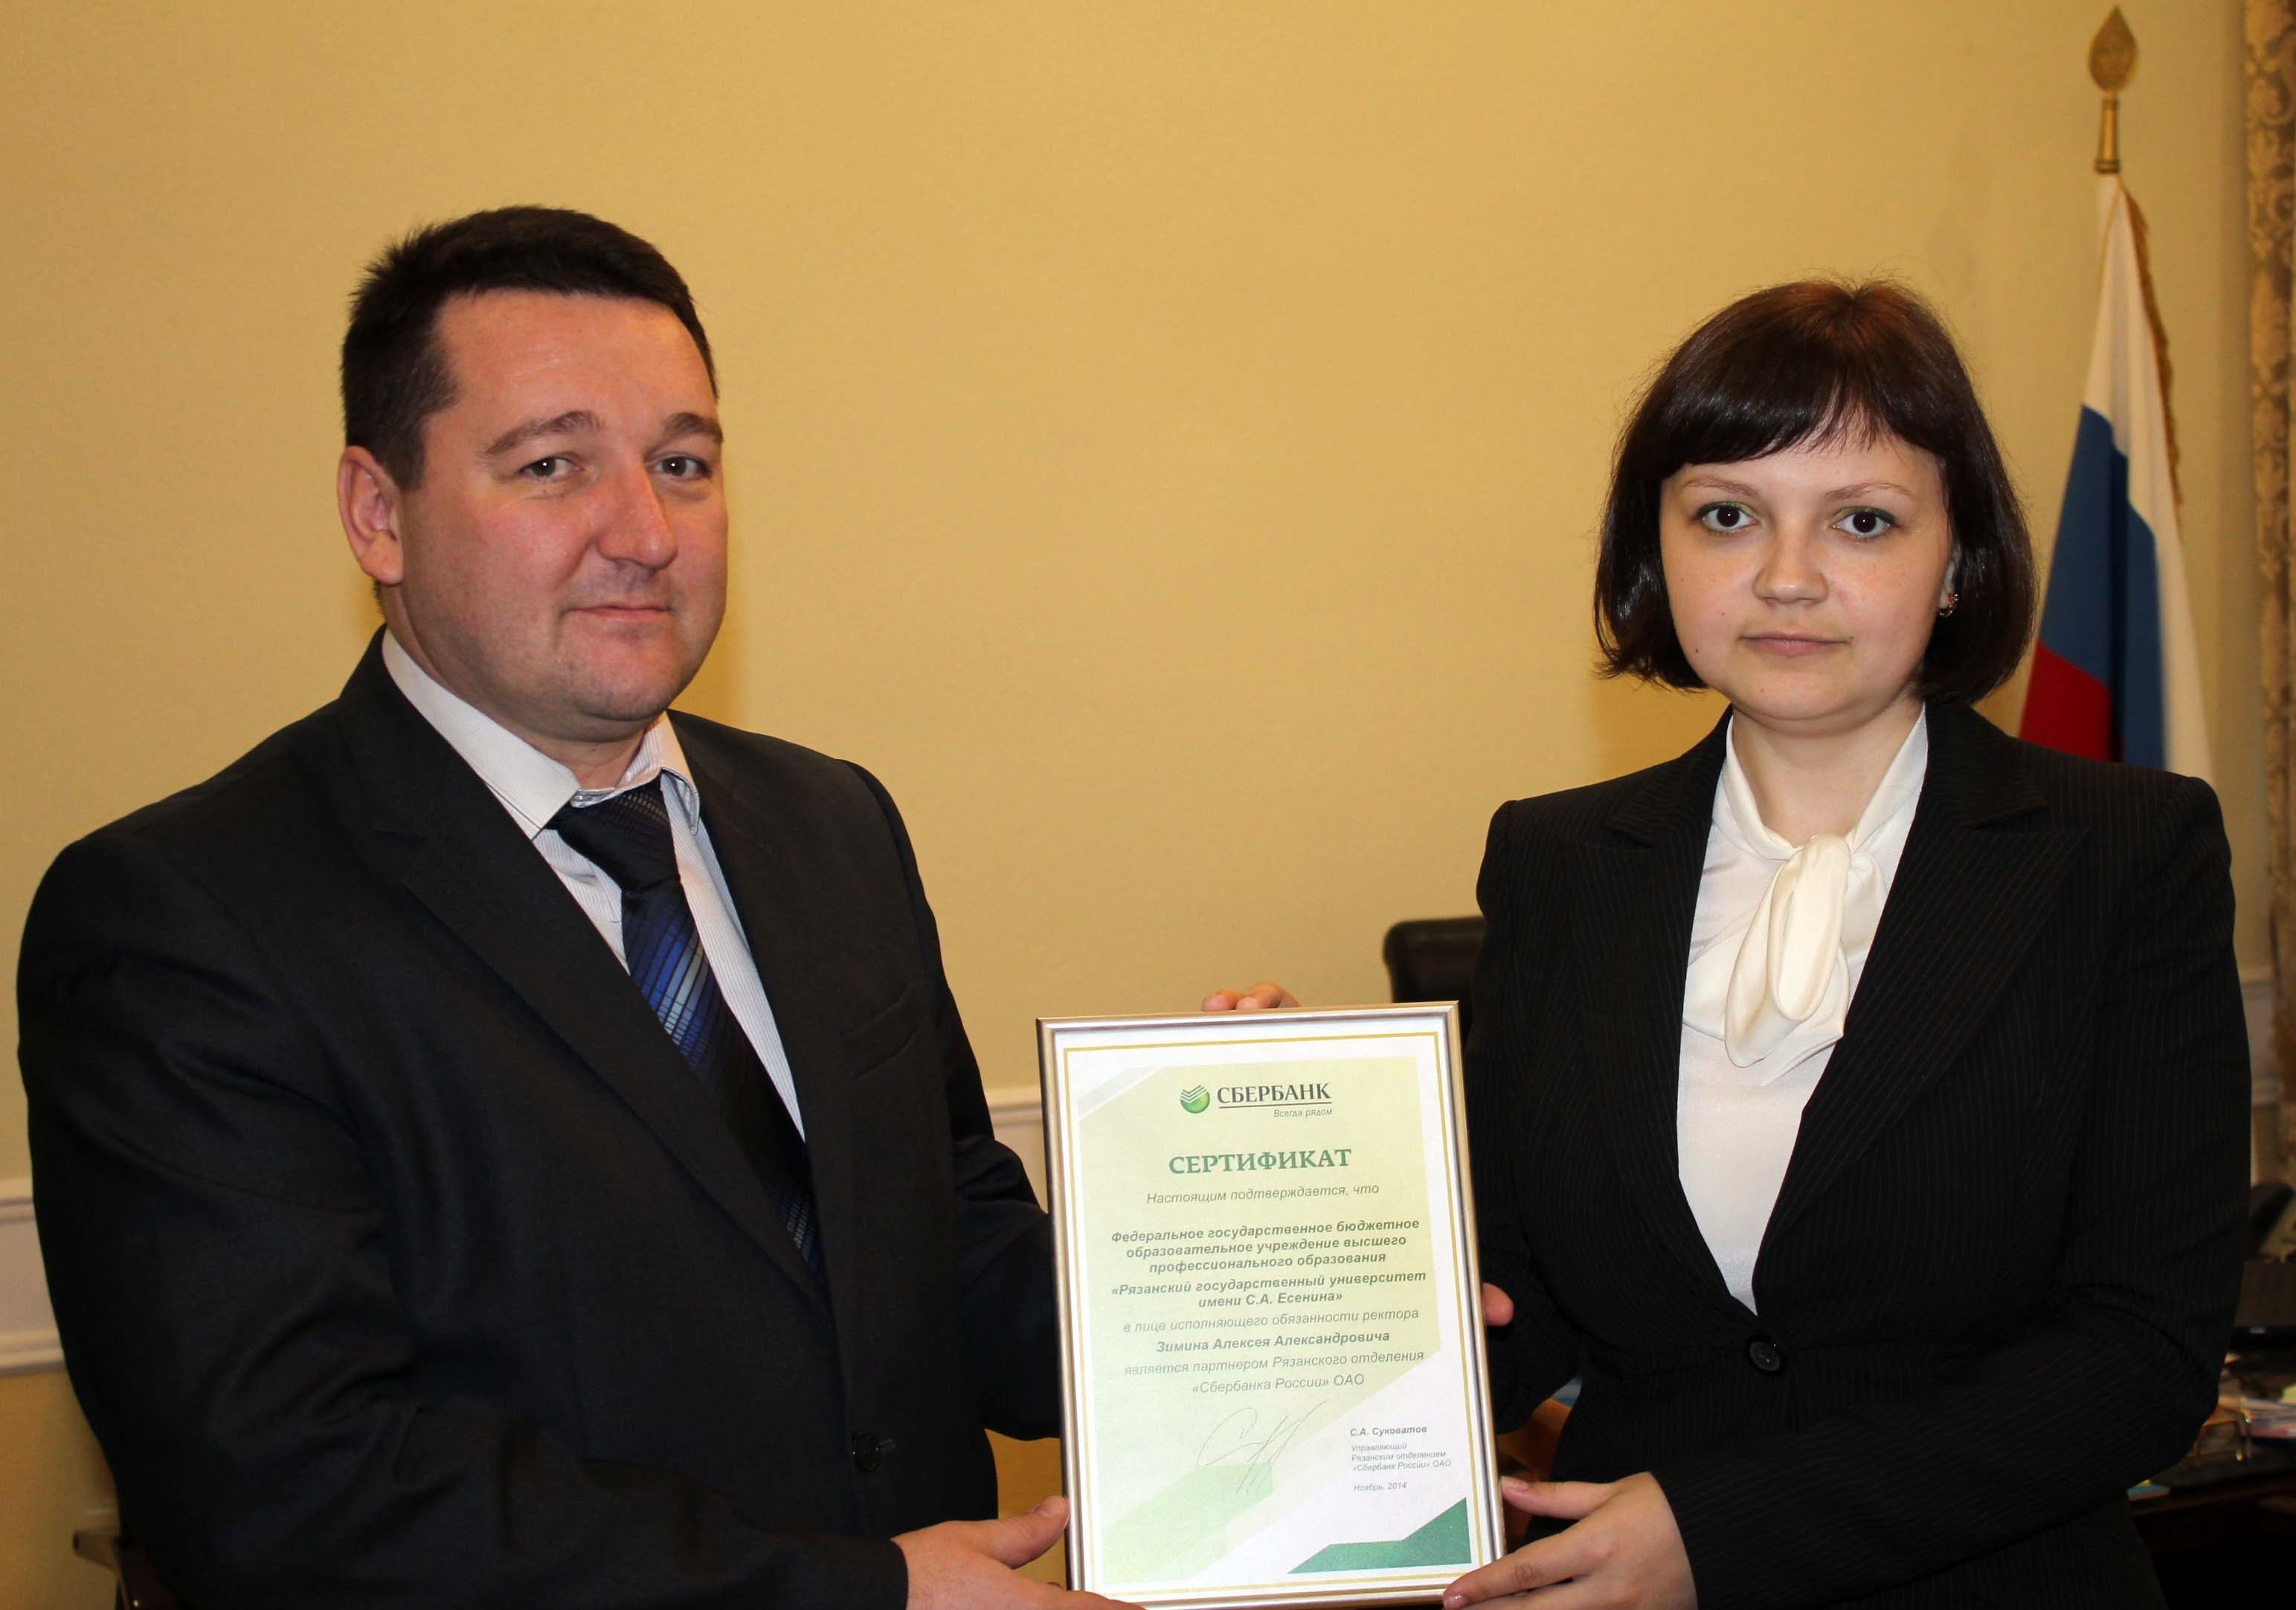 РГУ и Сбербанк подписали «зарплатный договор»